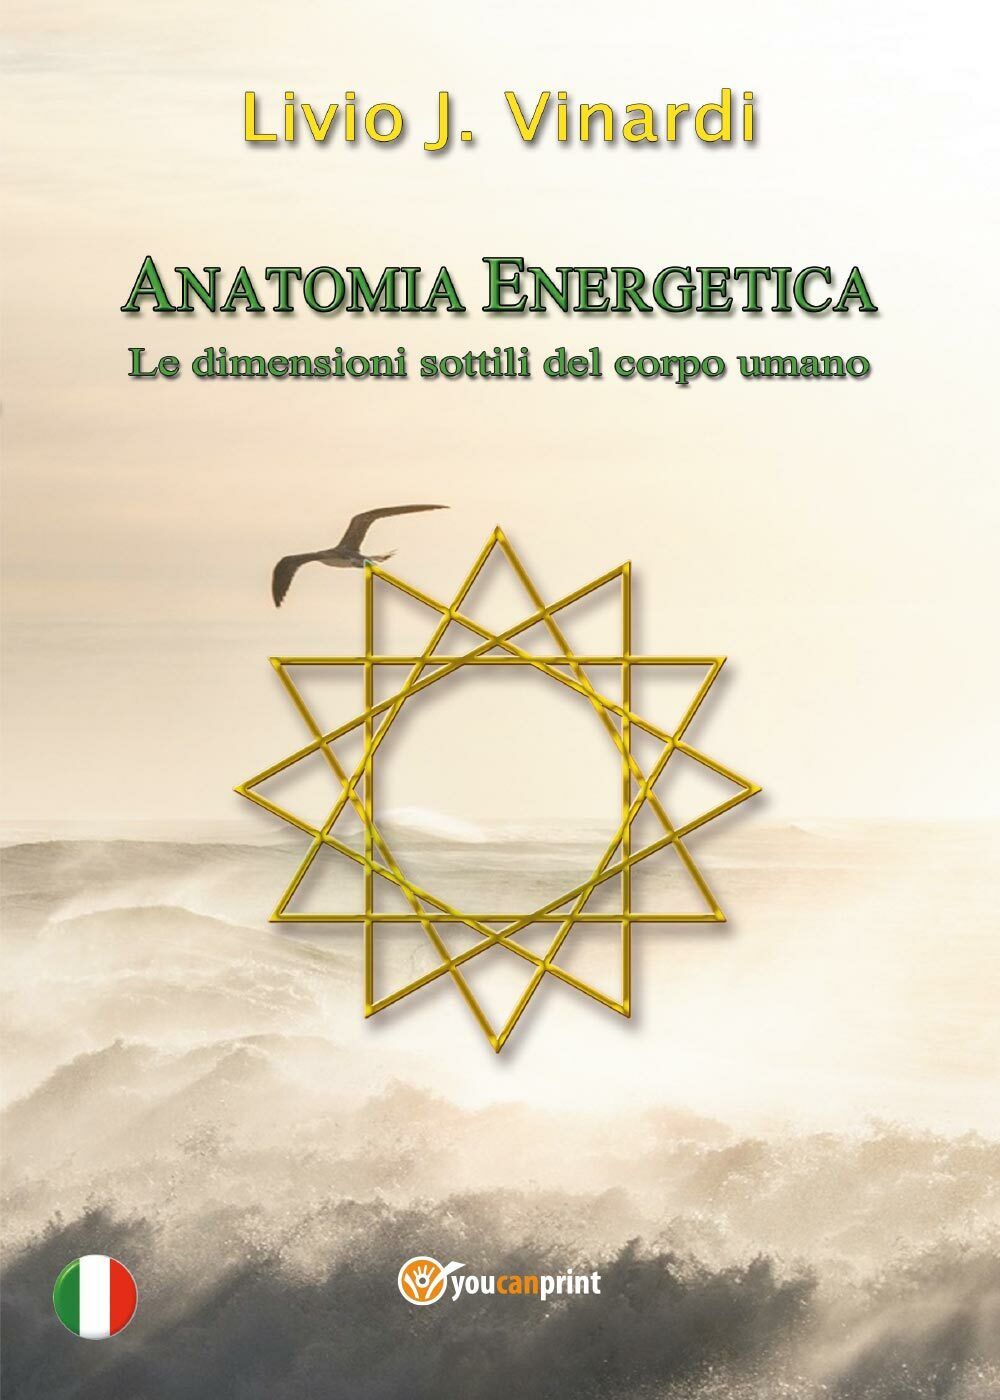 Anatomia Energetica - Le dimensioni sottili del corpo umano (Livio J. Vinardi) libro usato